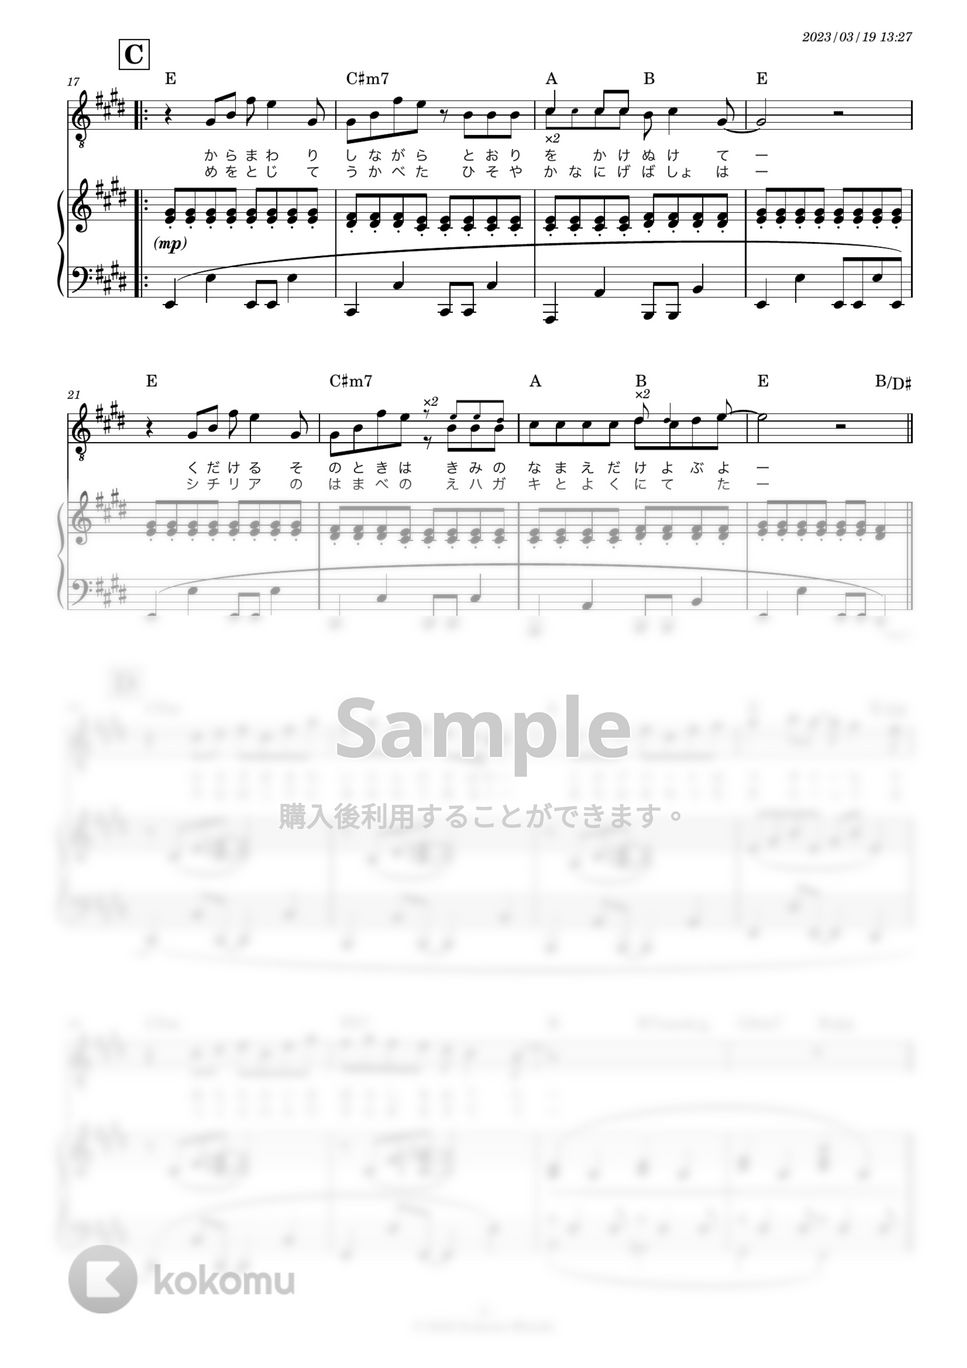 スピッツ - 猫になりたい (ピアノ弾き語りor伴奏) by 糸川瑞樹